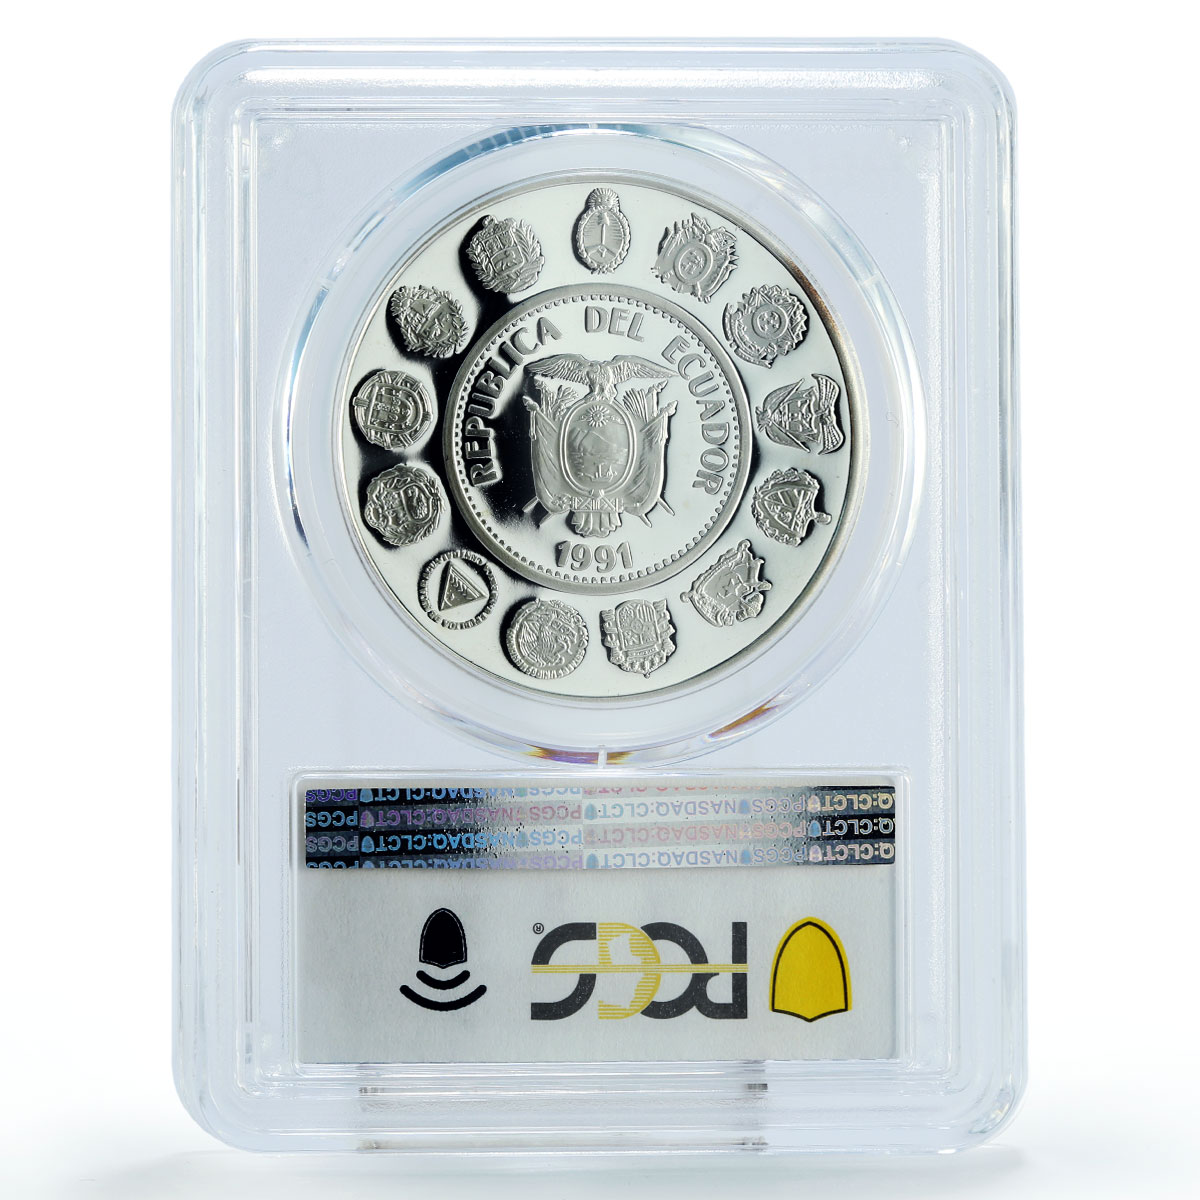 Ecuador 5000 sucres Columbus Ships Clippers PR69 PCGS silver coin 1991